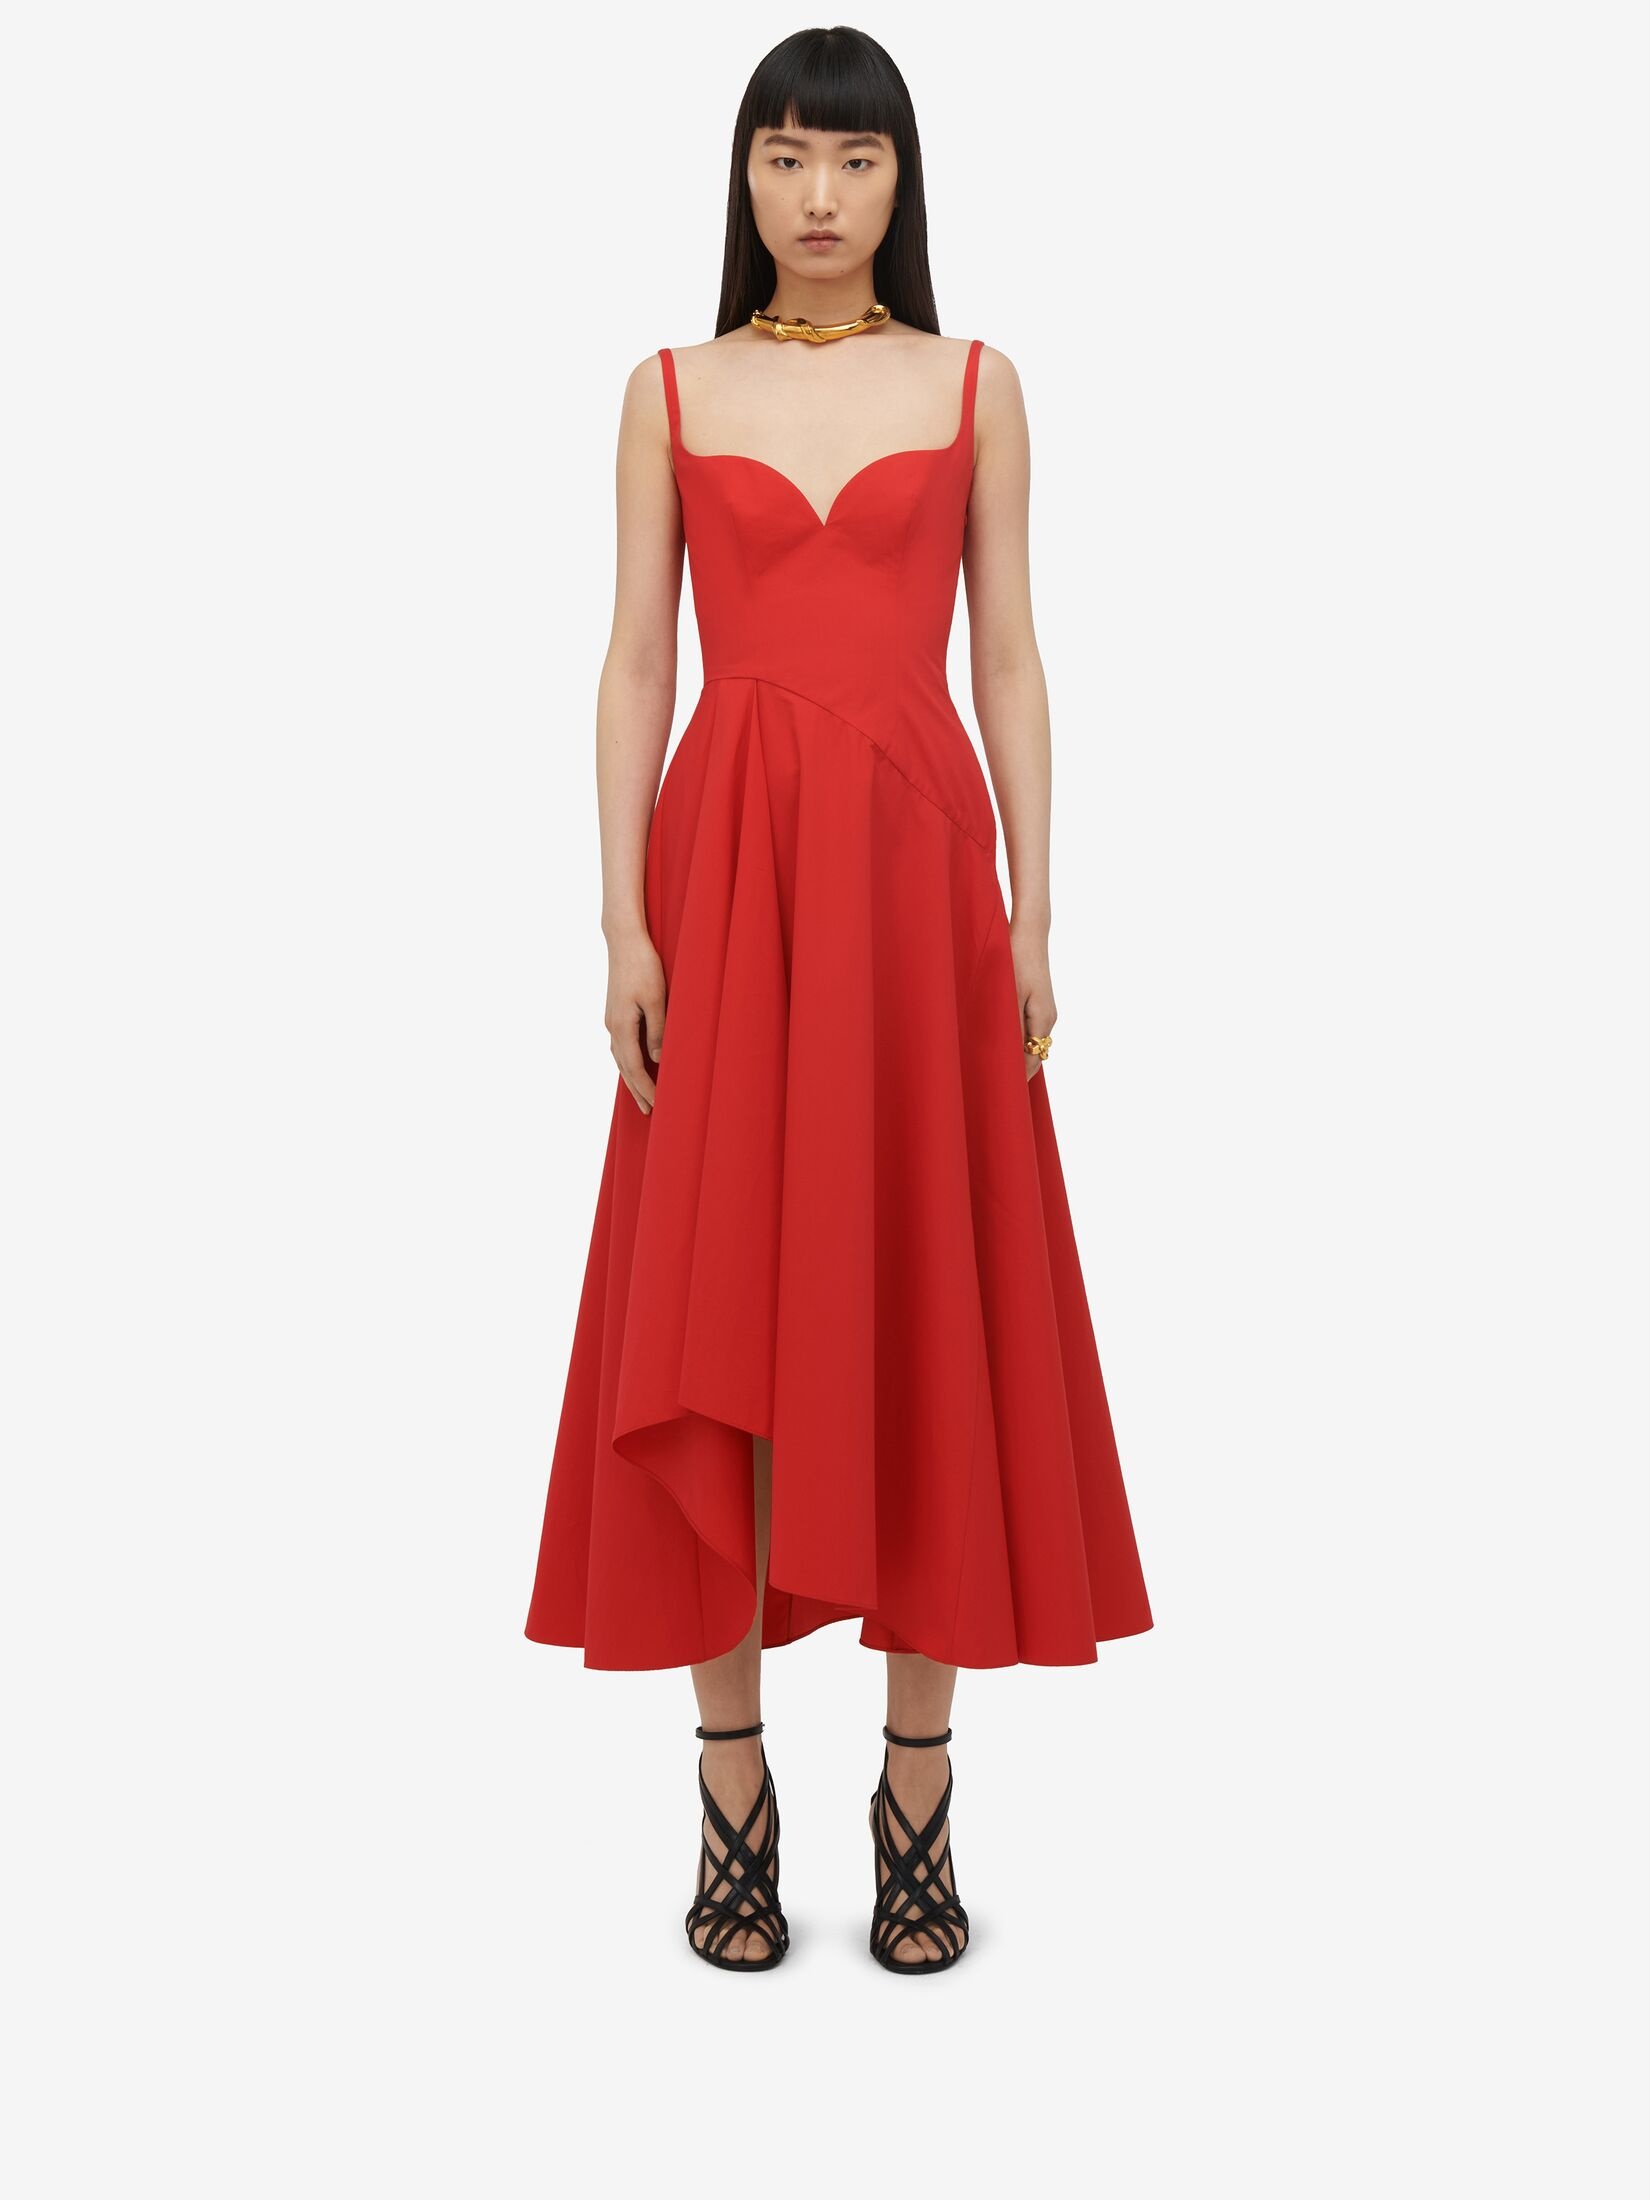 Women's Sweetheart Neckline Midi Dress in Lust Red - 2